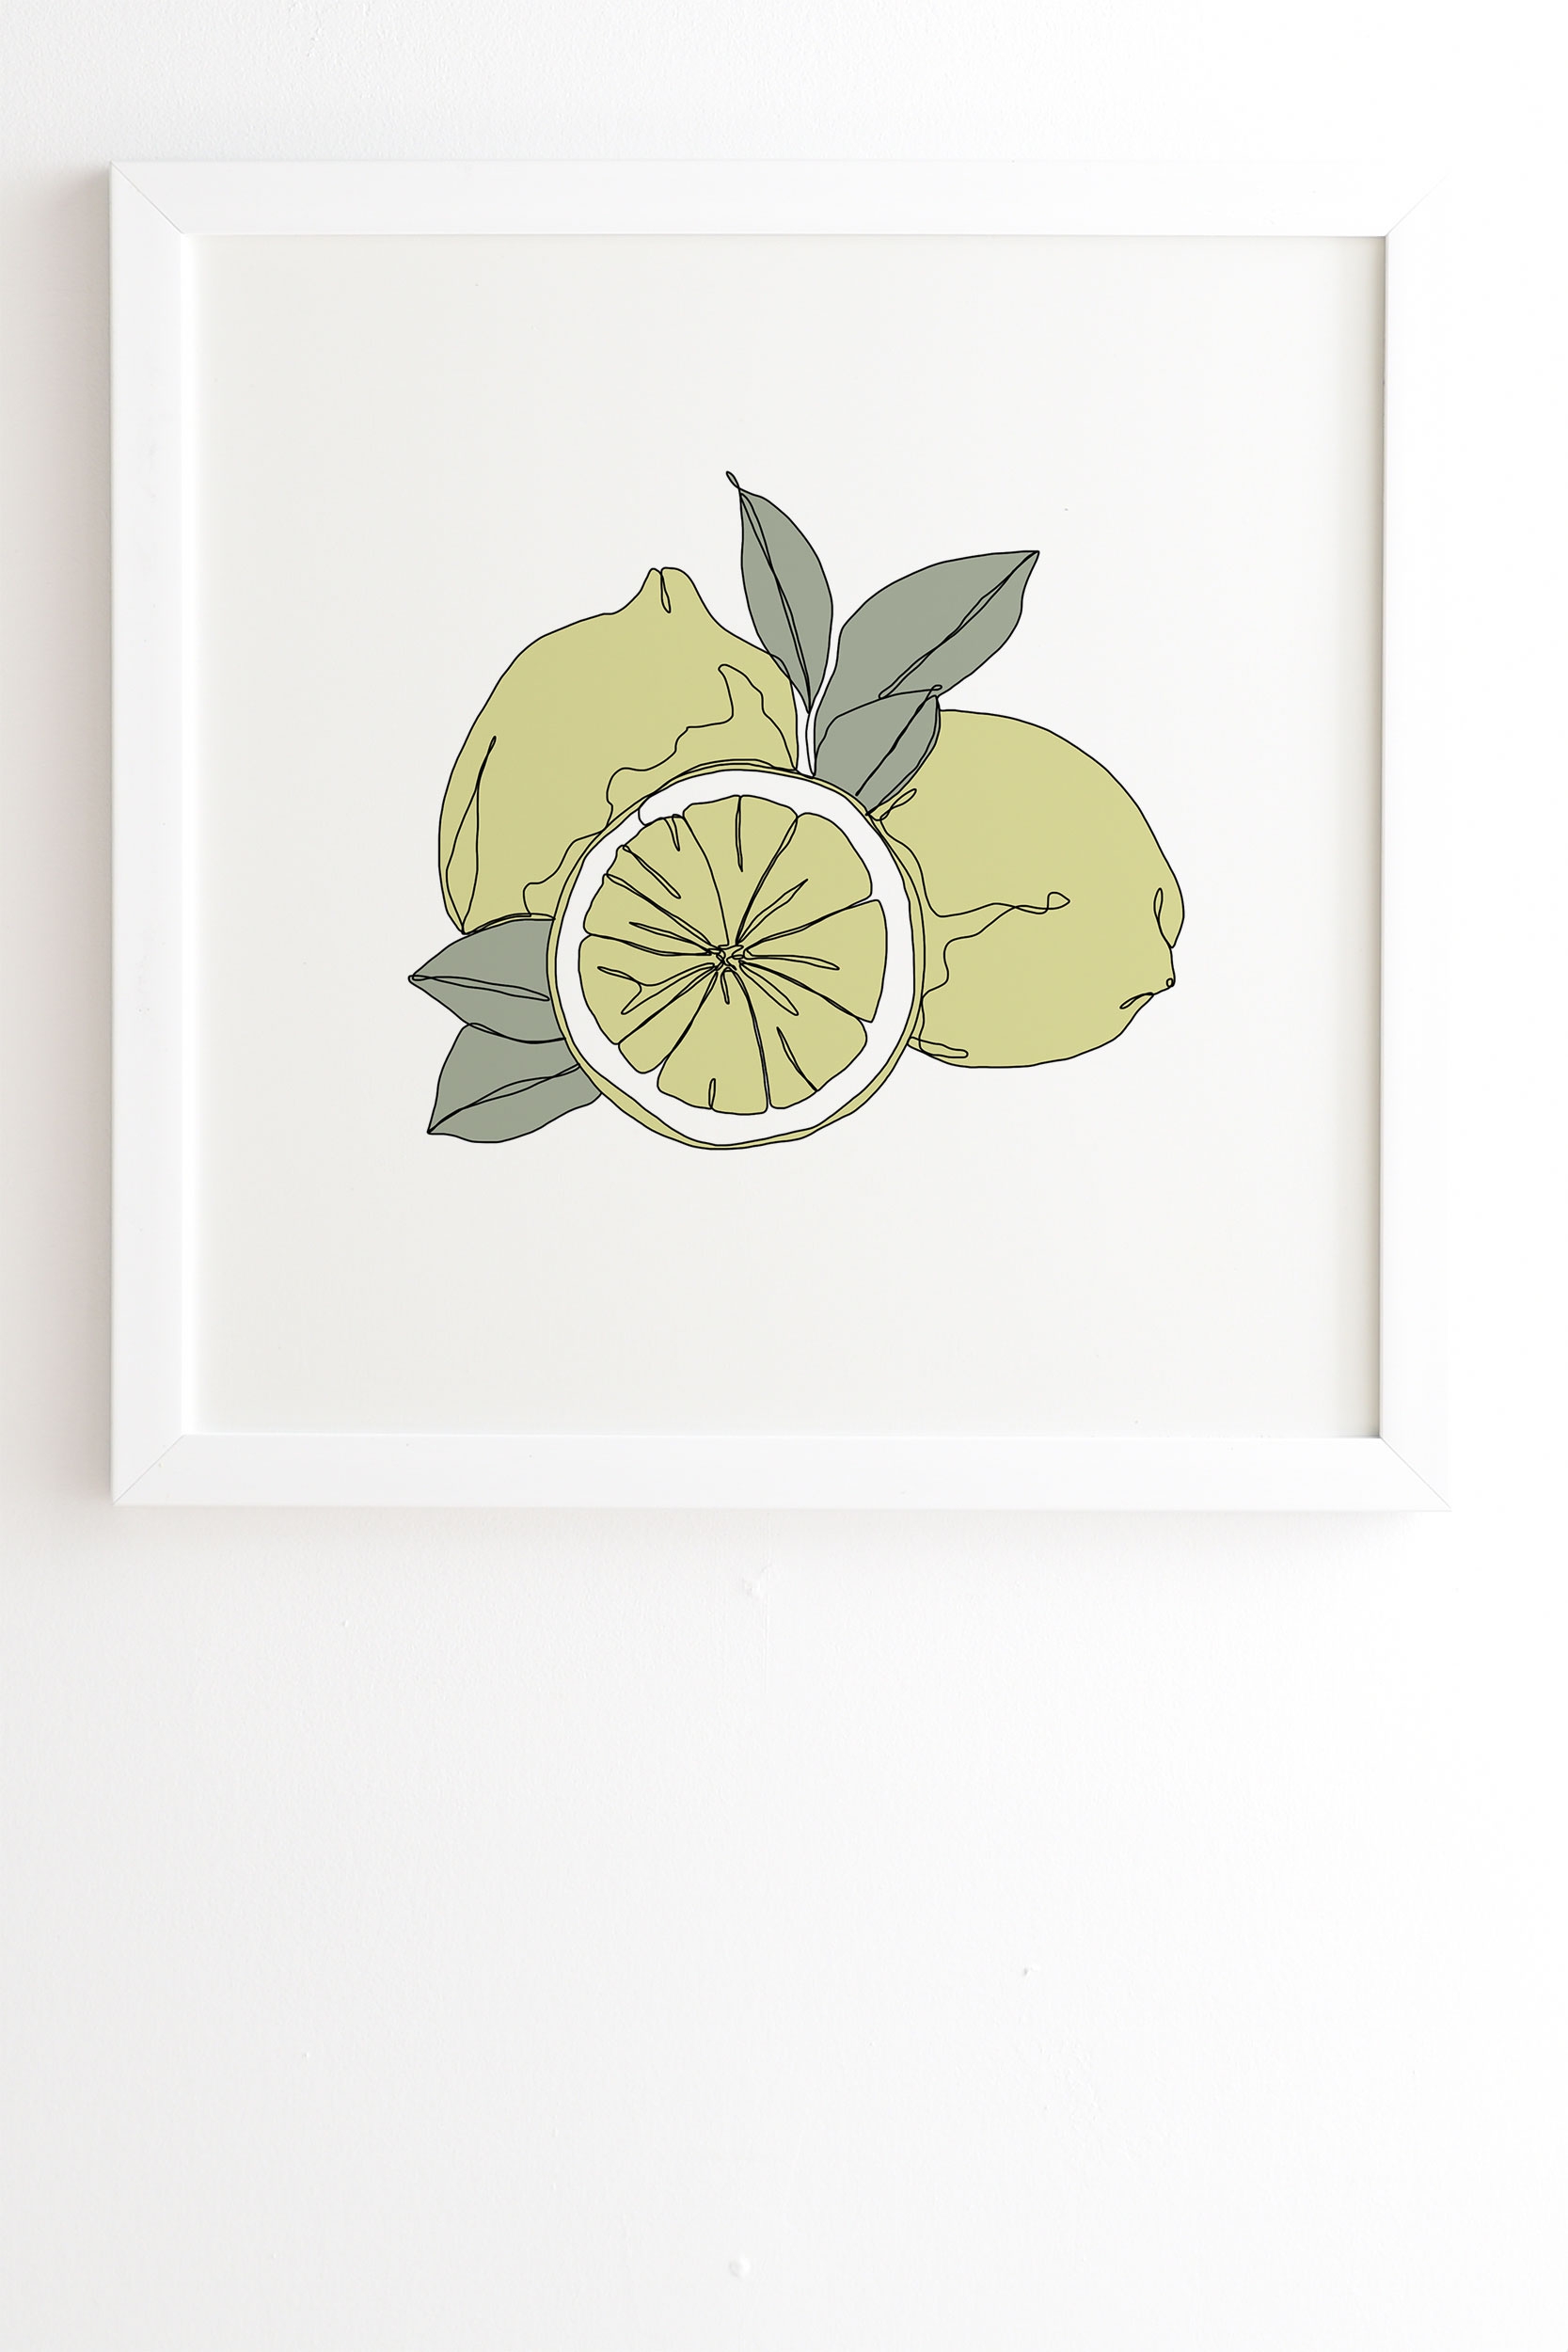 Lemons Artwork by The Colour Study - Framed Wall Art Basic White 19" x 22.4" - Image 1